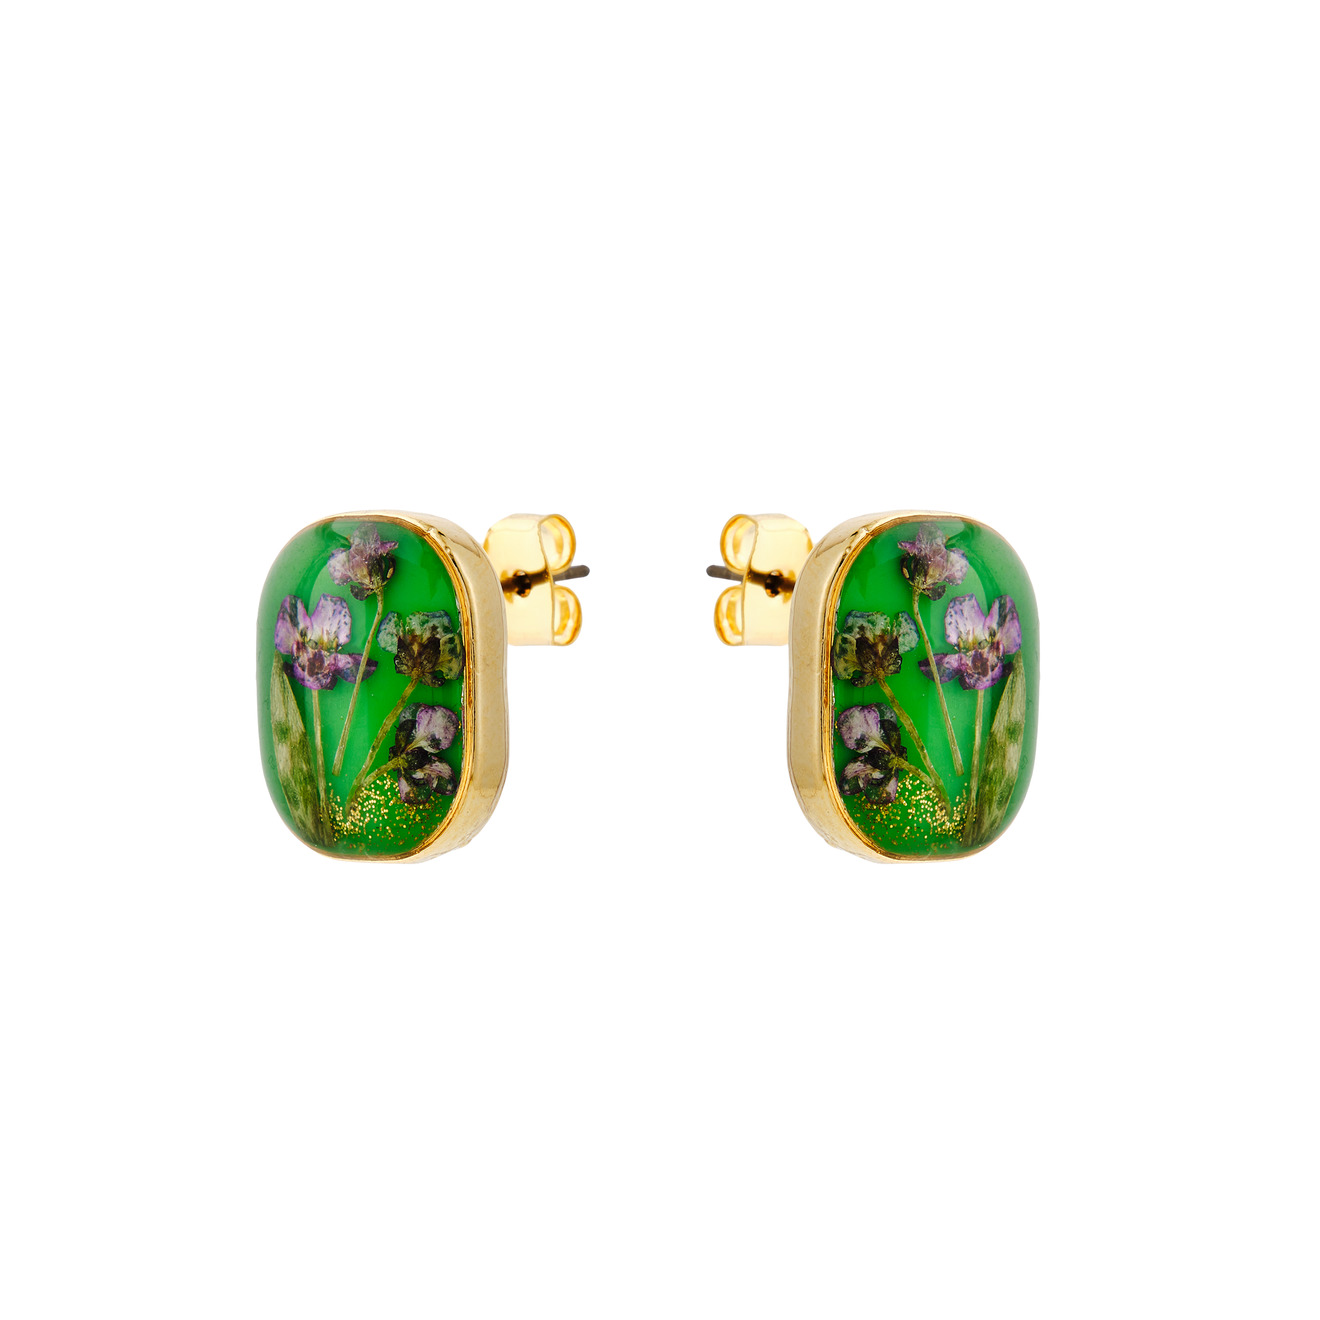 Wisteria Gems Золотистые зеленые серьги с фиолетовыми цветками серьги gems shine античный стиль